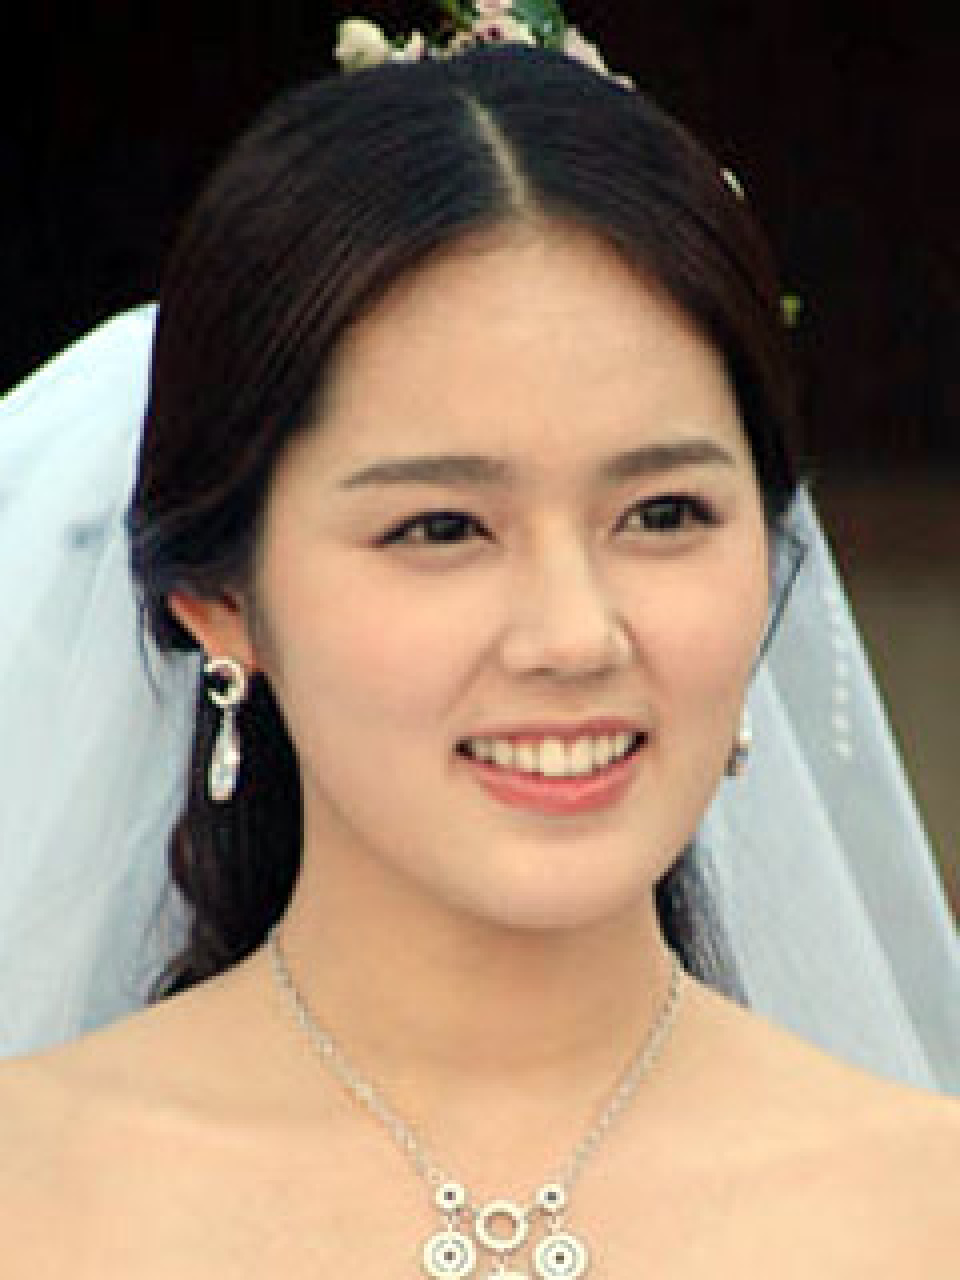 ヨン ジョンフン ハン ガイン結婚式 ハン ガイン 特選スター写真 韓流大好き